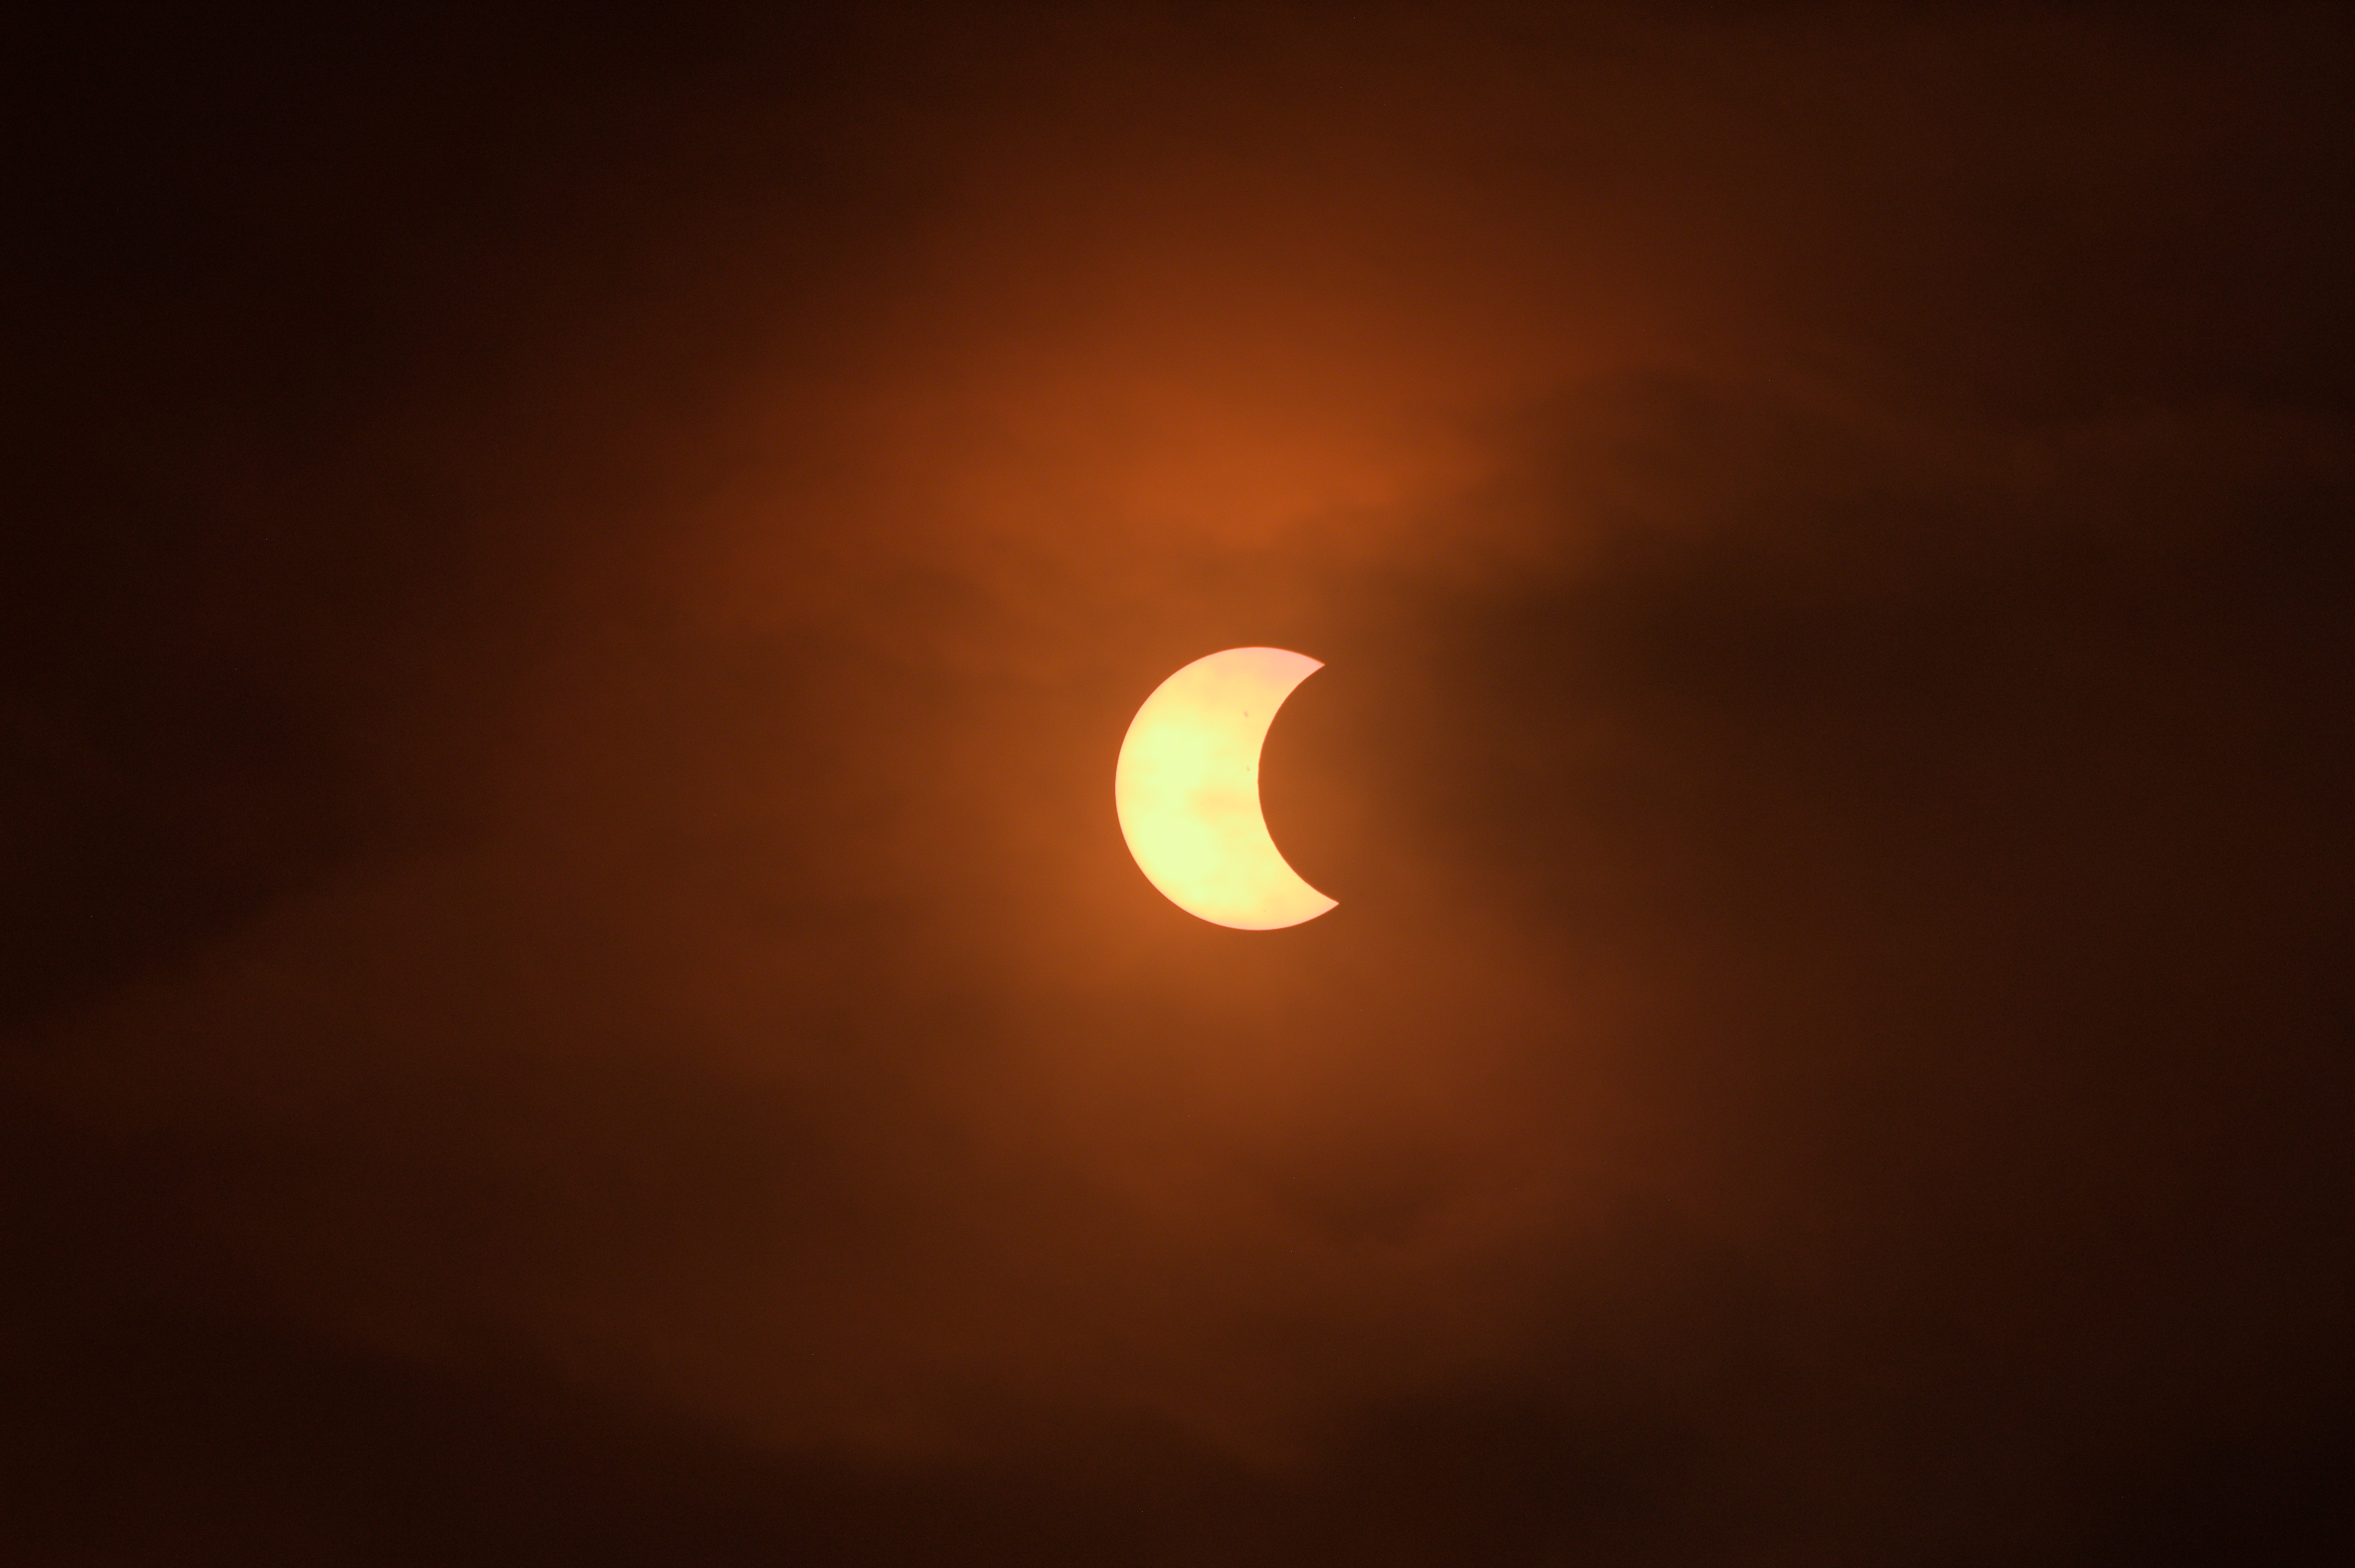 Pelo menos 7 pessoas buscam atendimento em BH com danos na visão após observar eclipse solar